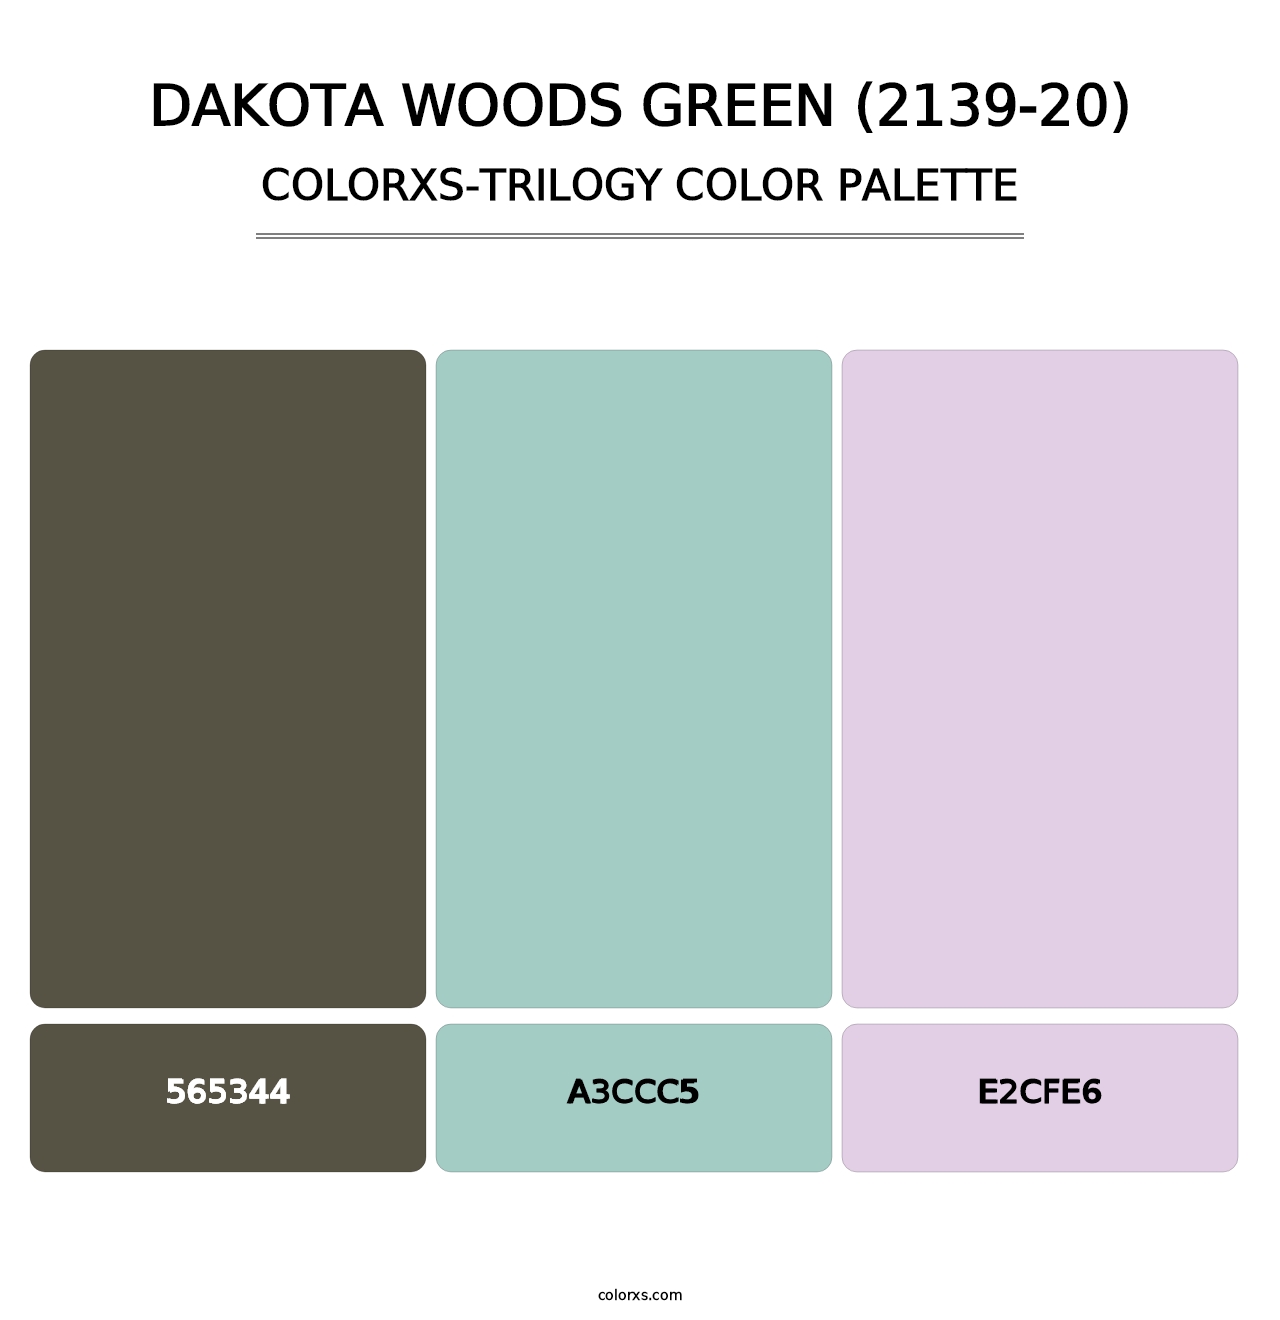 Dakota Woods Green (2139-20) - Colorxs Trilogy Palette